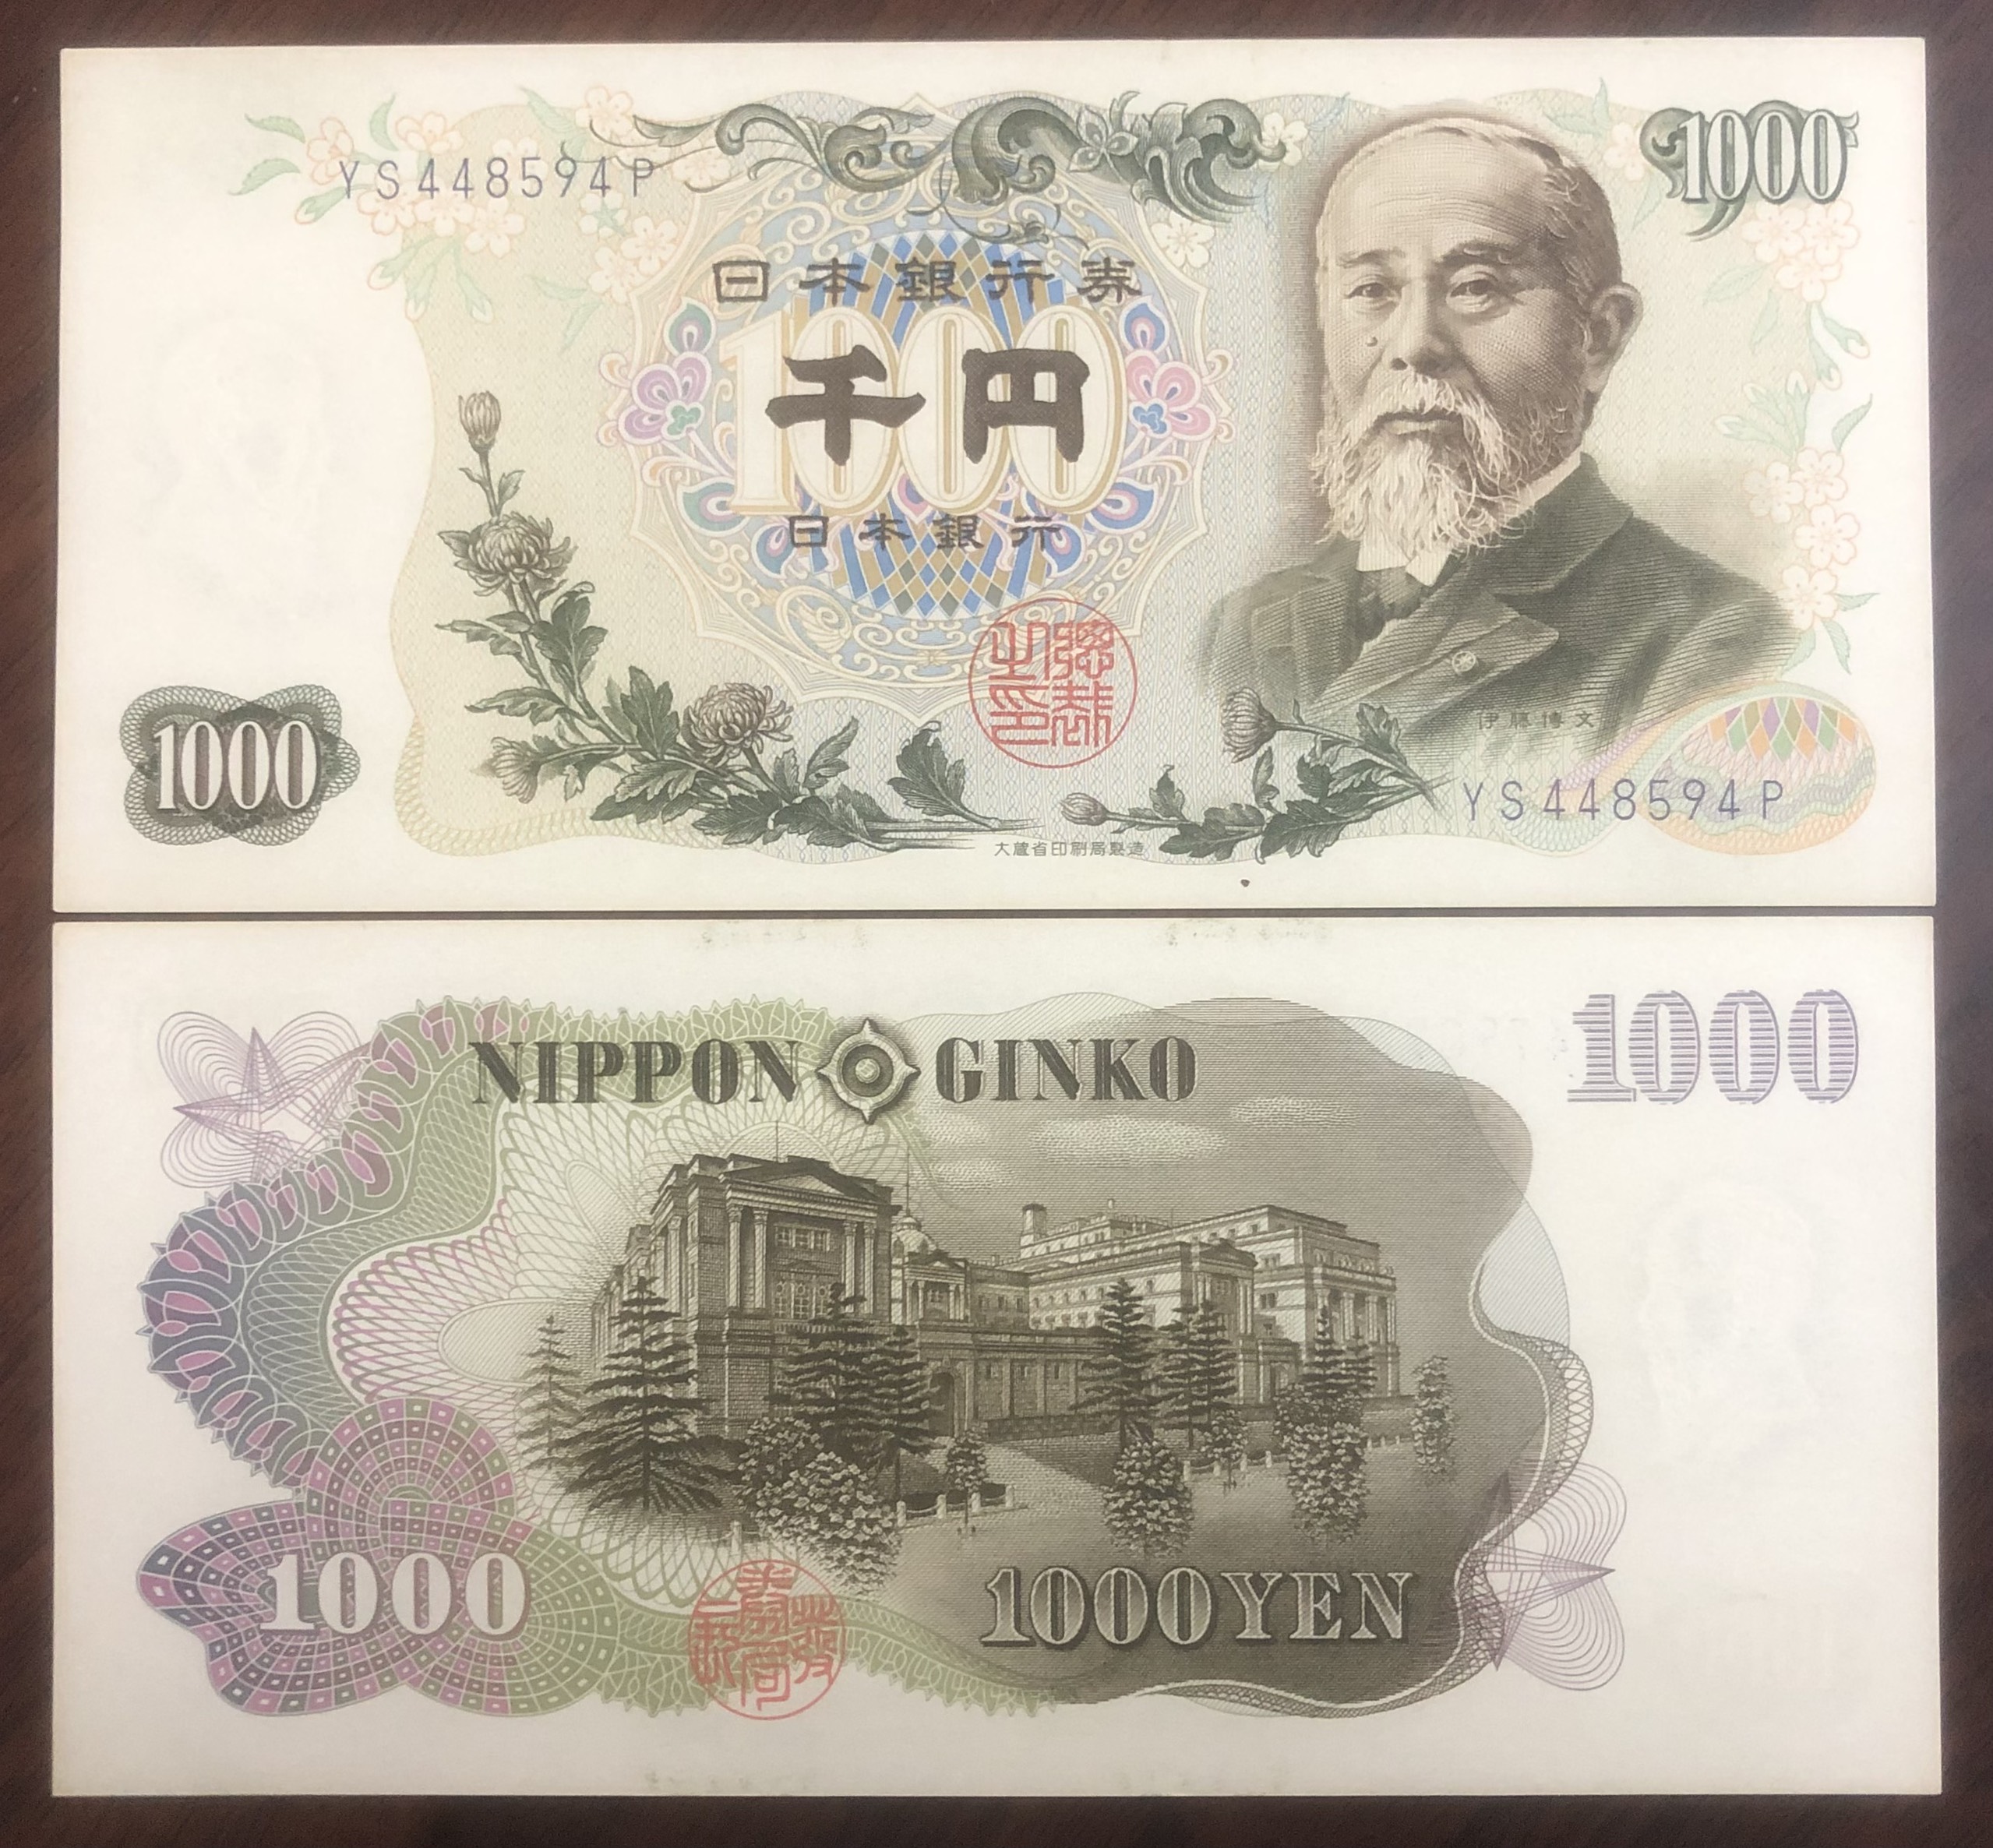 Tiền xưa Nhật Bản 1000 yên mới cứng, tặng kèm phơi bảo quản